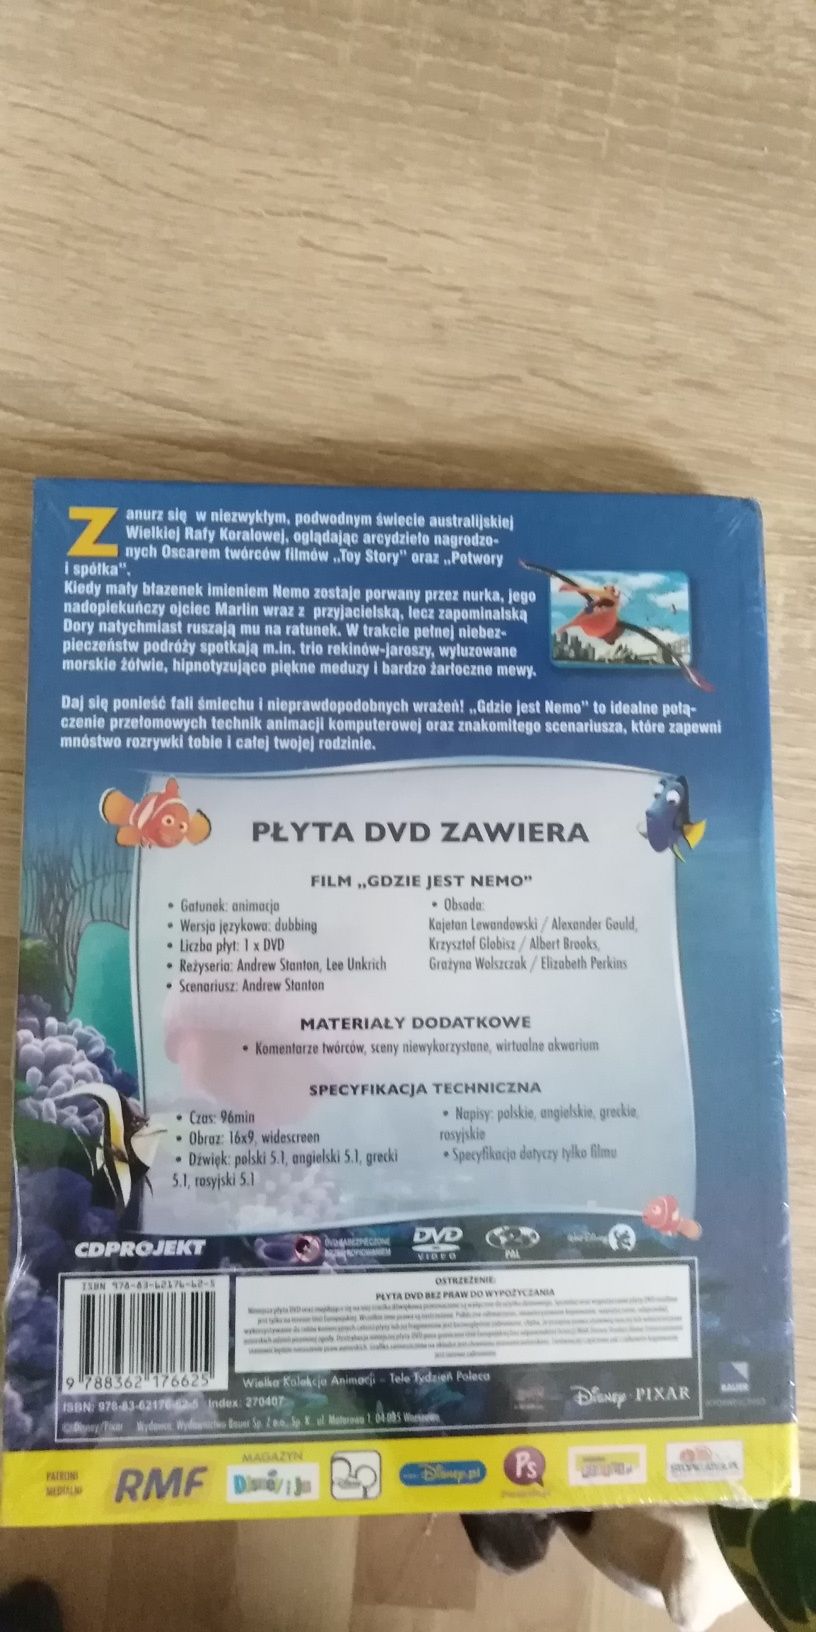 Gdzie jest Nemo płyta dvd z ksiązka